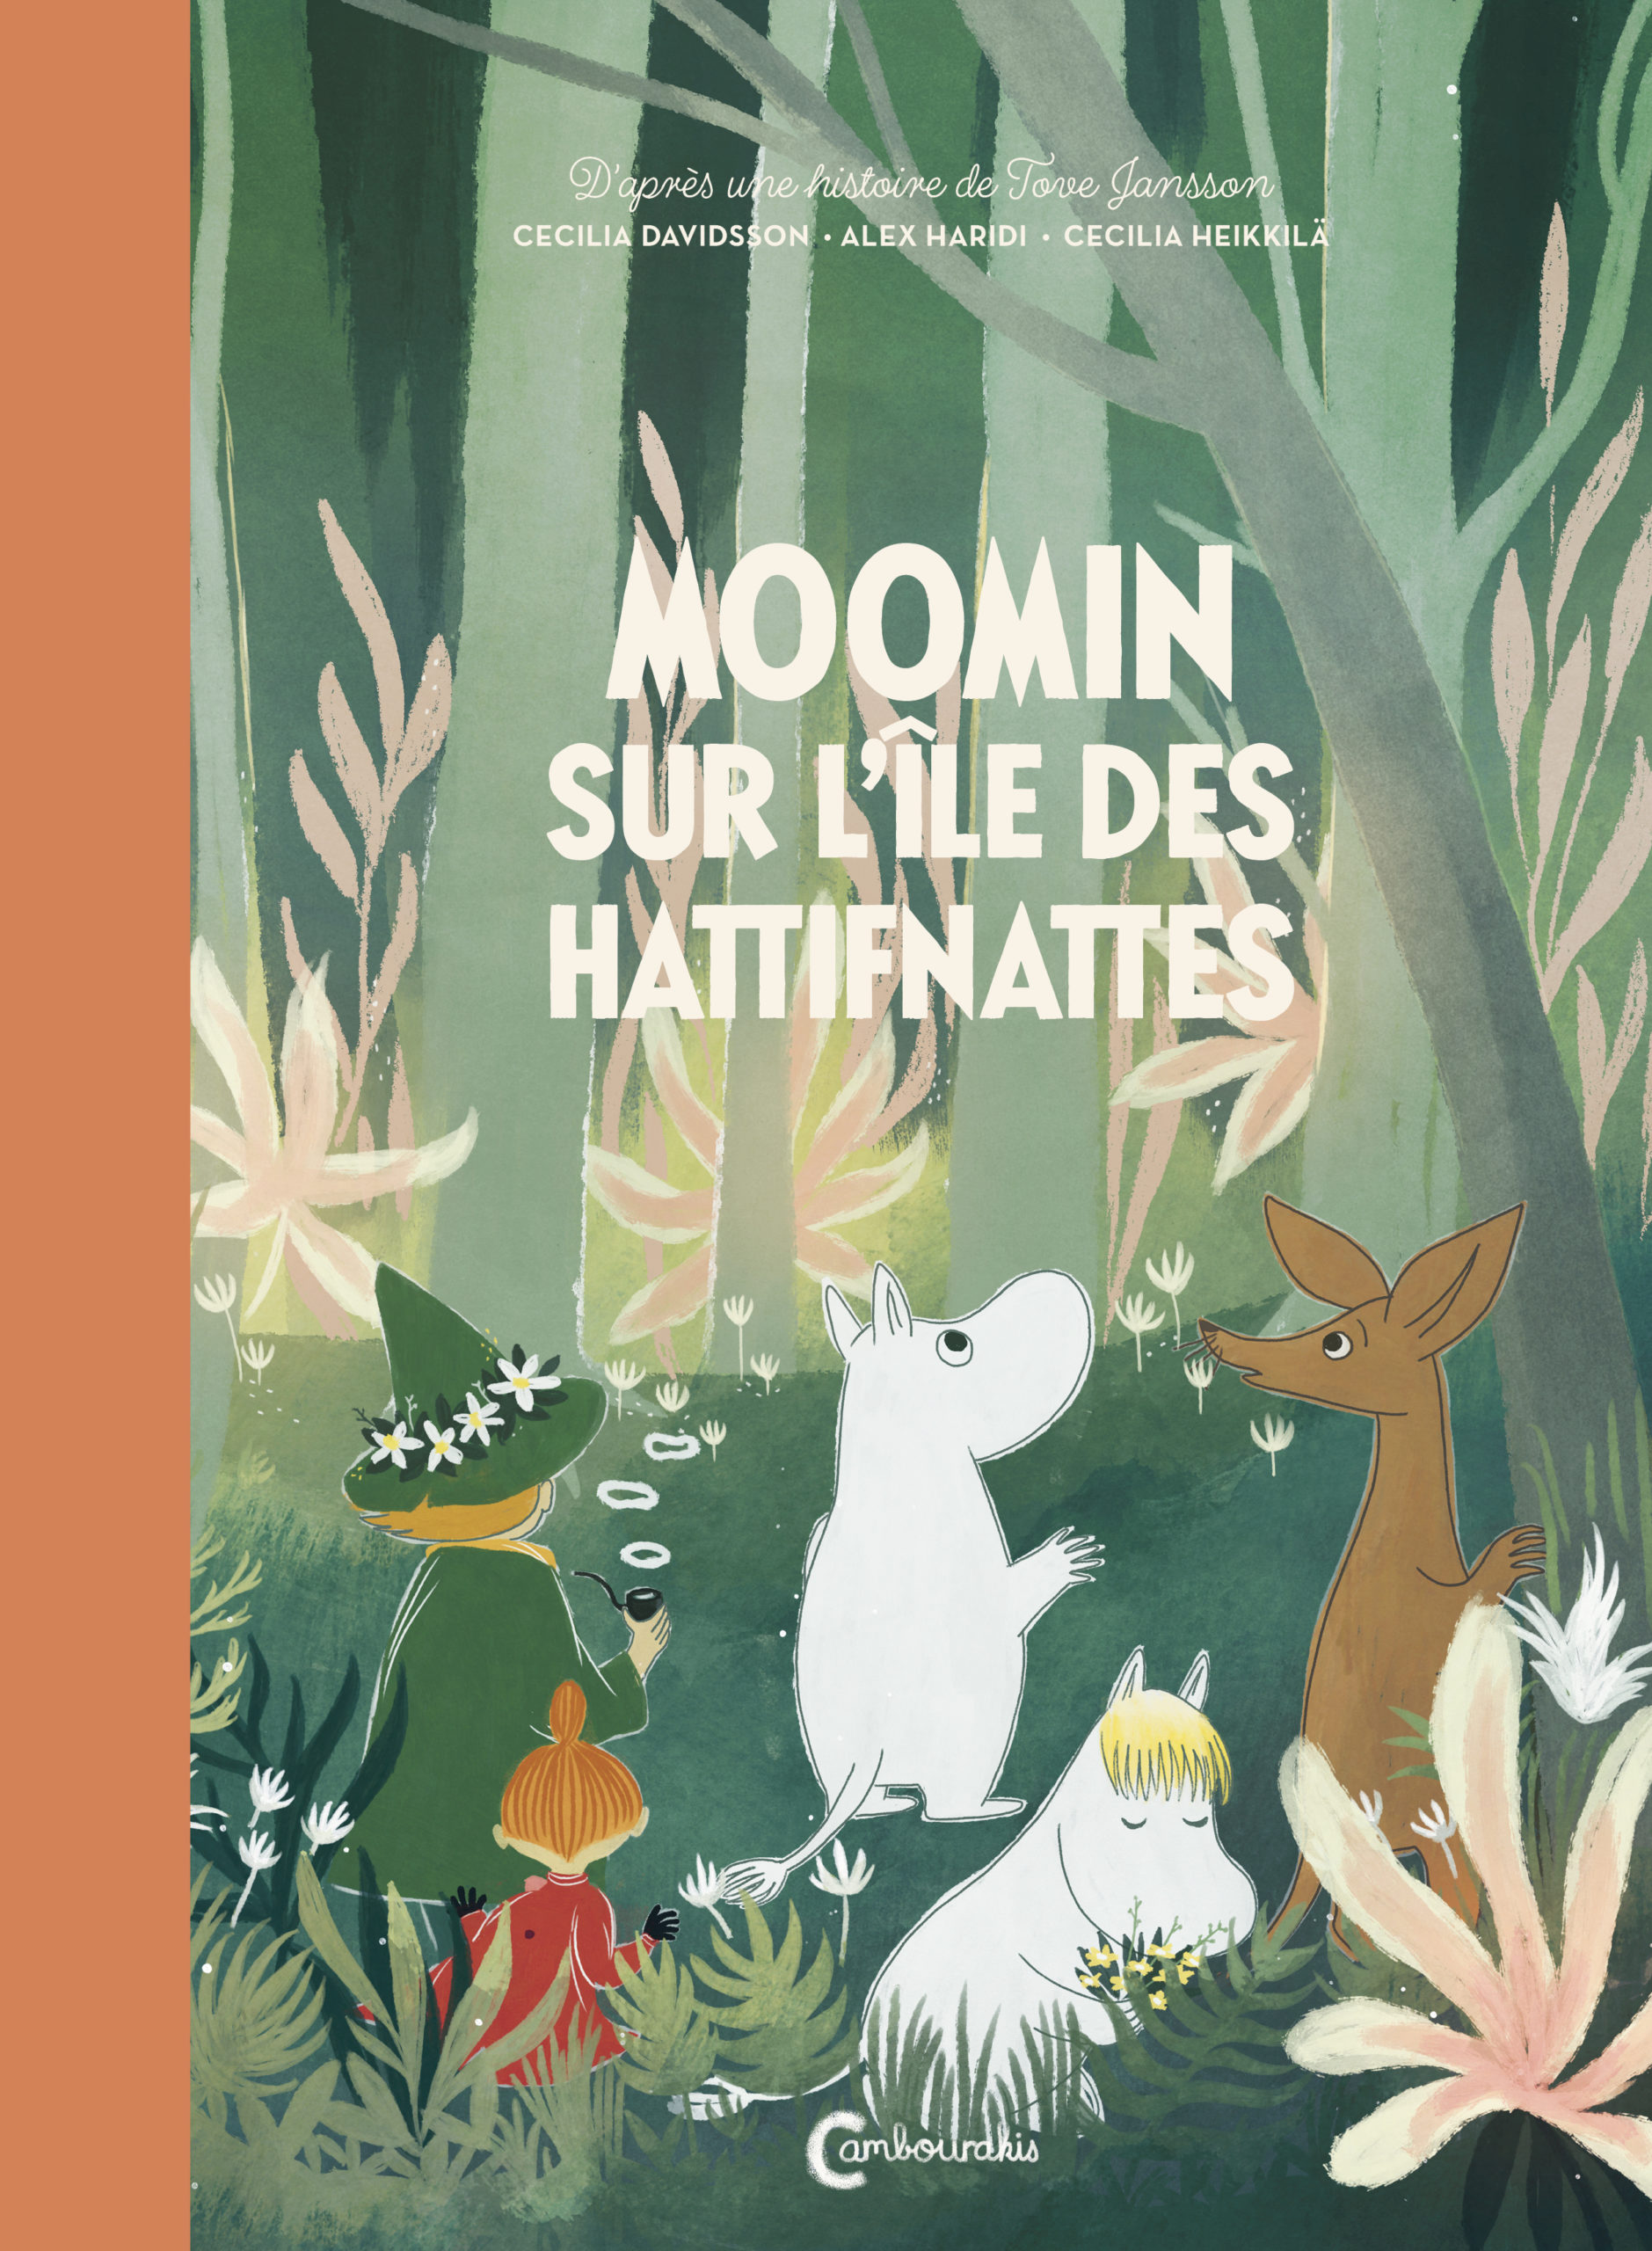 Moomin sur l'île des Hattifnattes - Éditions Cambourakis